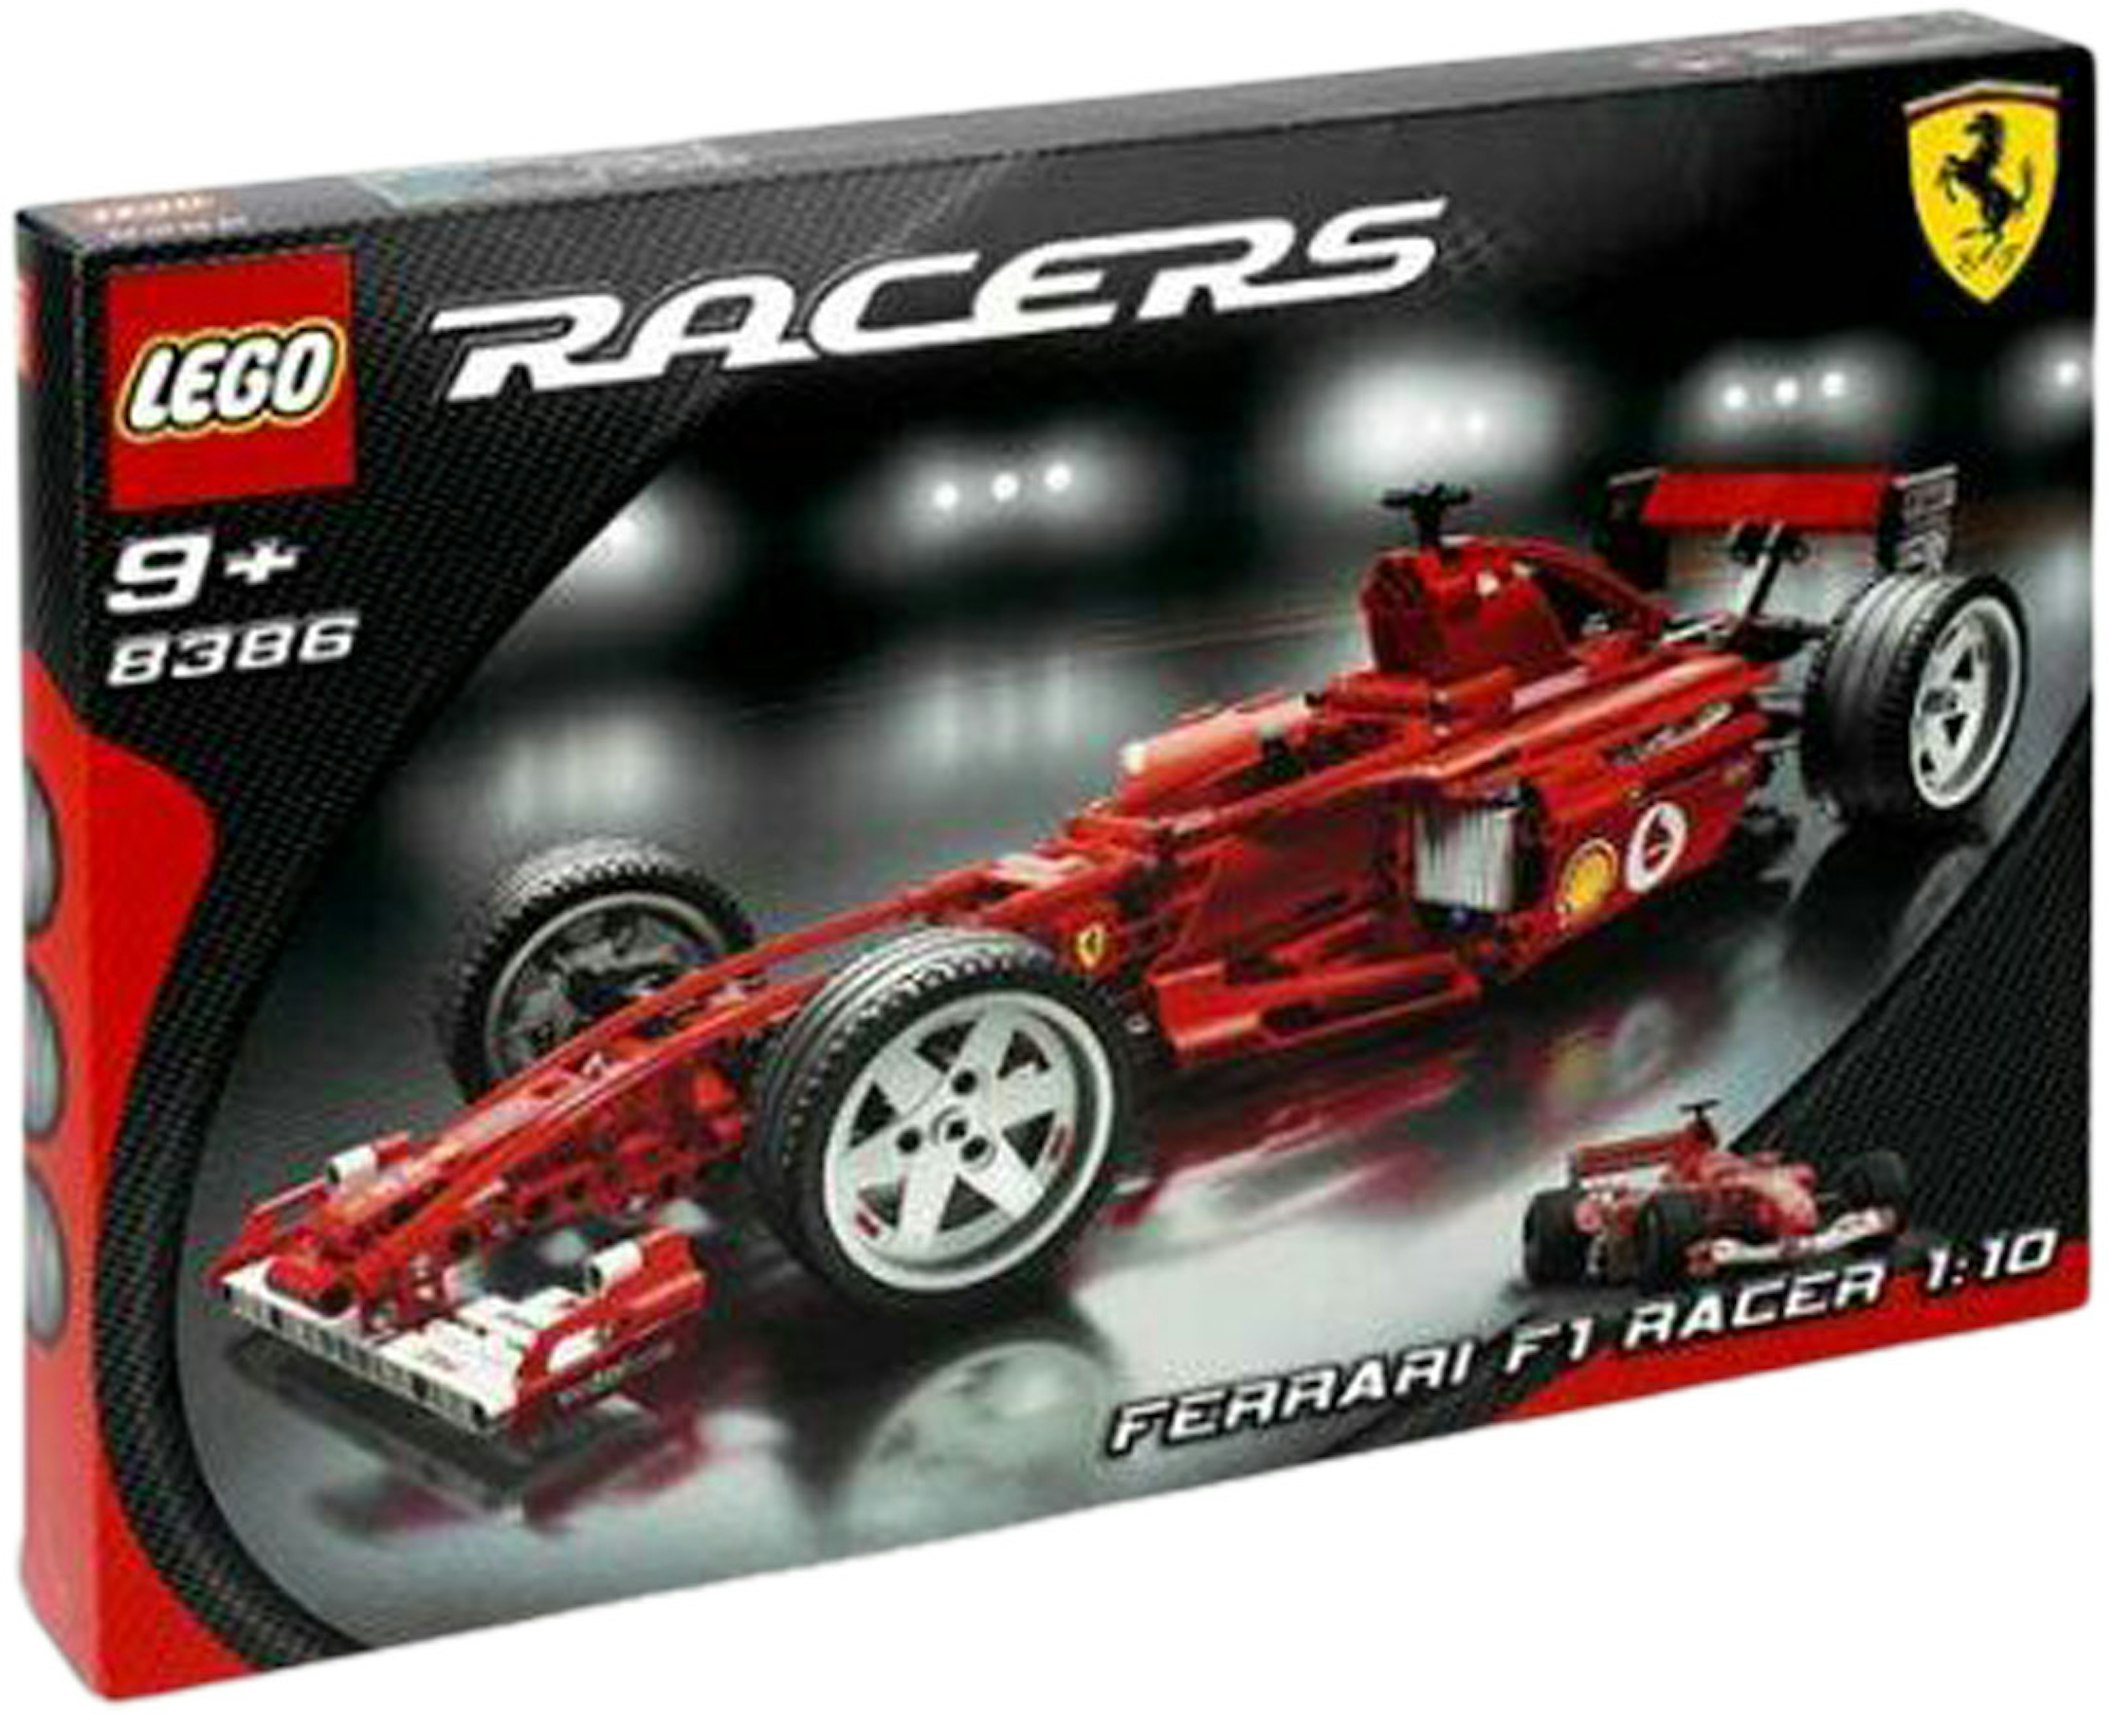 Kompatibel med Køre ud Aktiver LEGO Racers Ferrari F1 Racer 1:10 Set 8386 - US